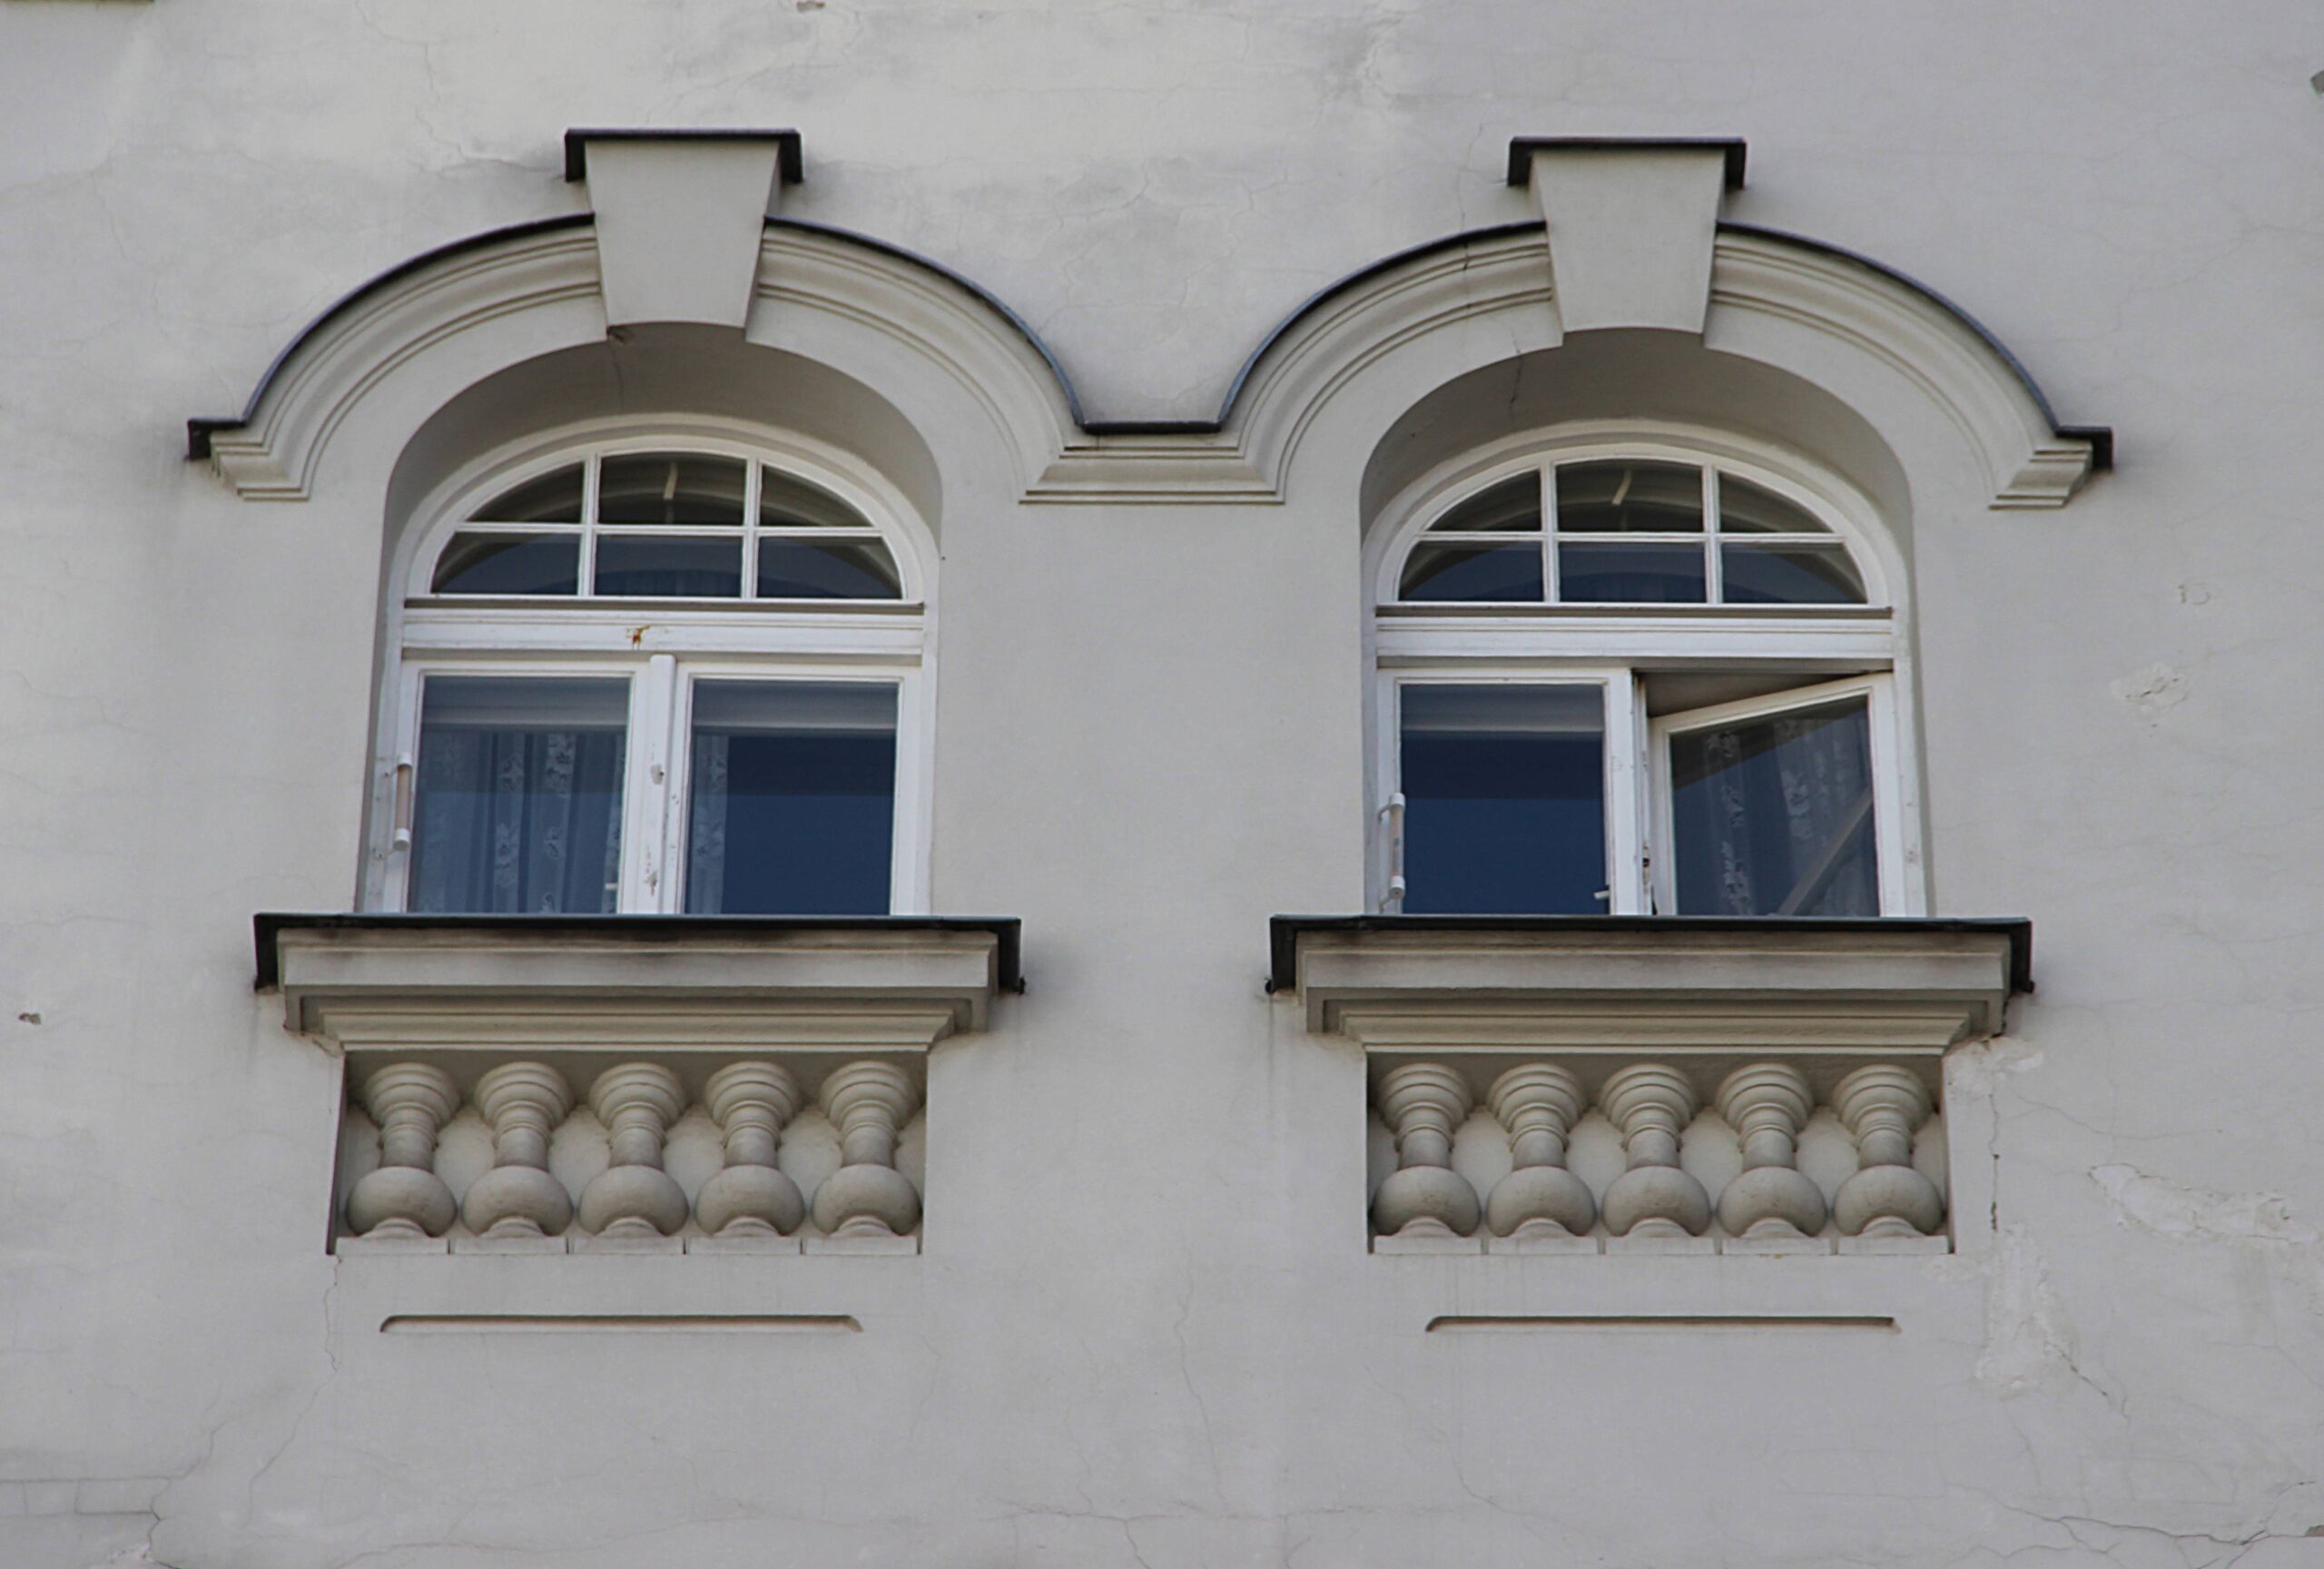 Elewacja frontowa. Bliźniacze okna IV-go piętra. Fot. Małgorzata Maksymiuk 2022 r., źródło: AOD III.